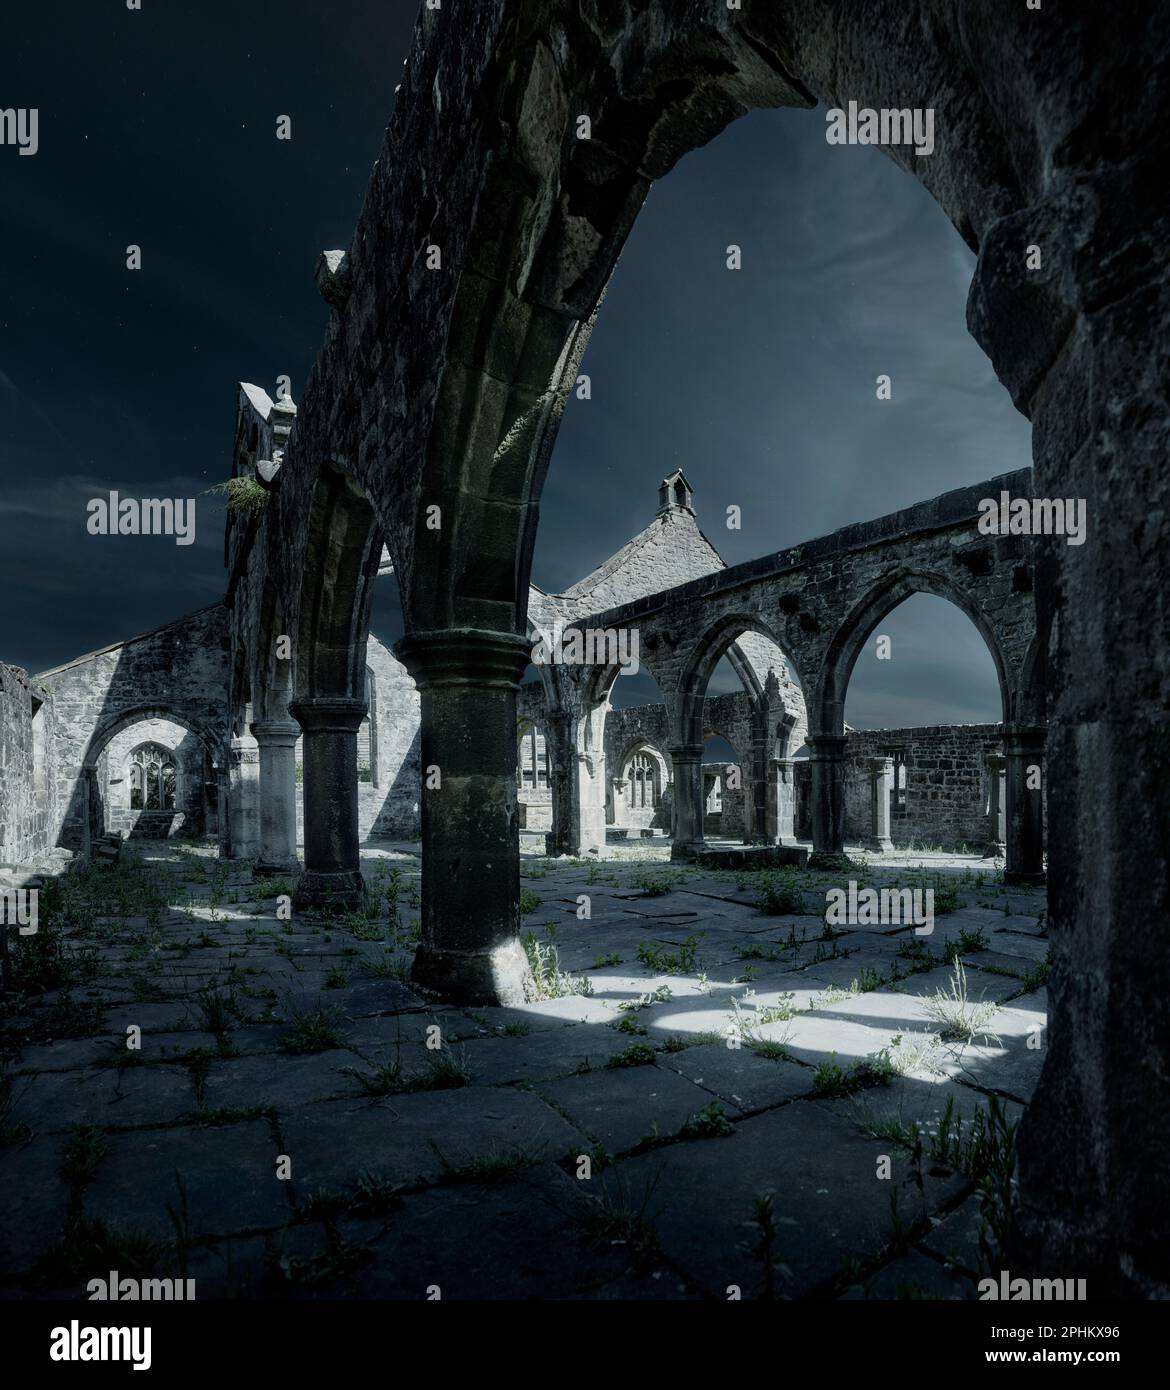 Rovine della Chiesa di San Tommaso A' Becket al chiaro di luna, Heptonstall, West Yorkshire, Inghilterra. Una fotografia notturna di questo edificio religioso abbandonato Foto Stock